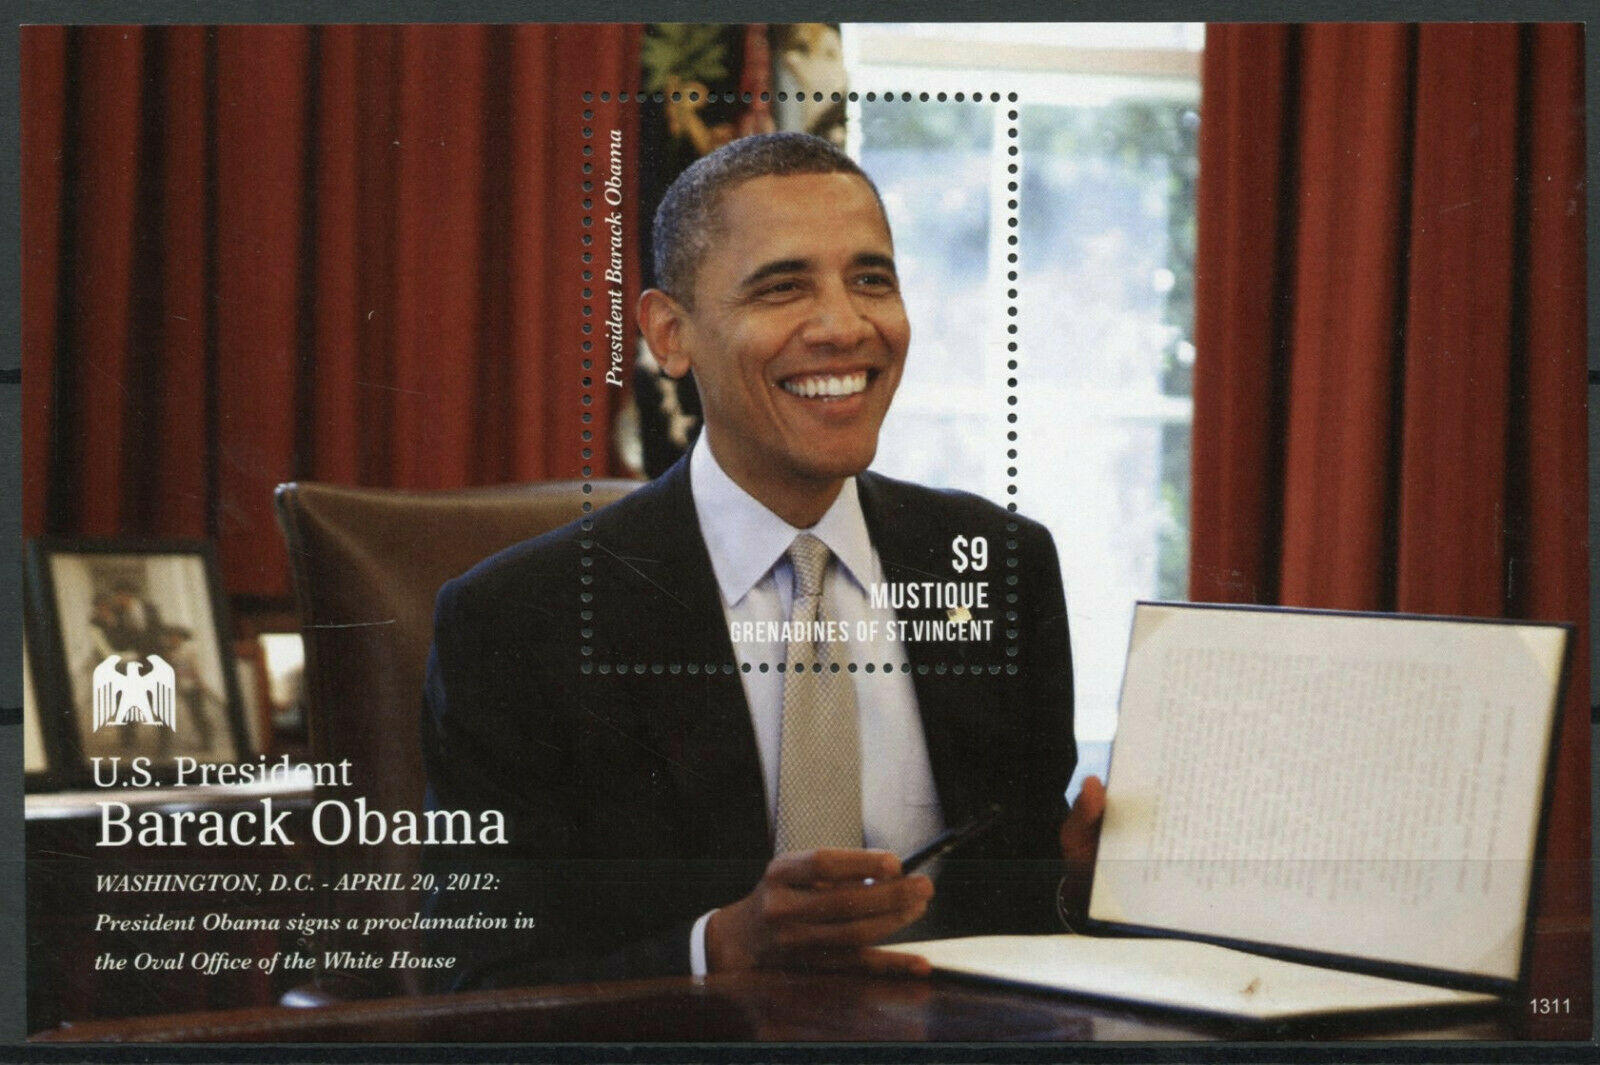 Mustique Gren St Vincent 2013 MNH US Presidents Stamps Barack Obama Famous People 1v S/S I